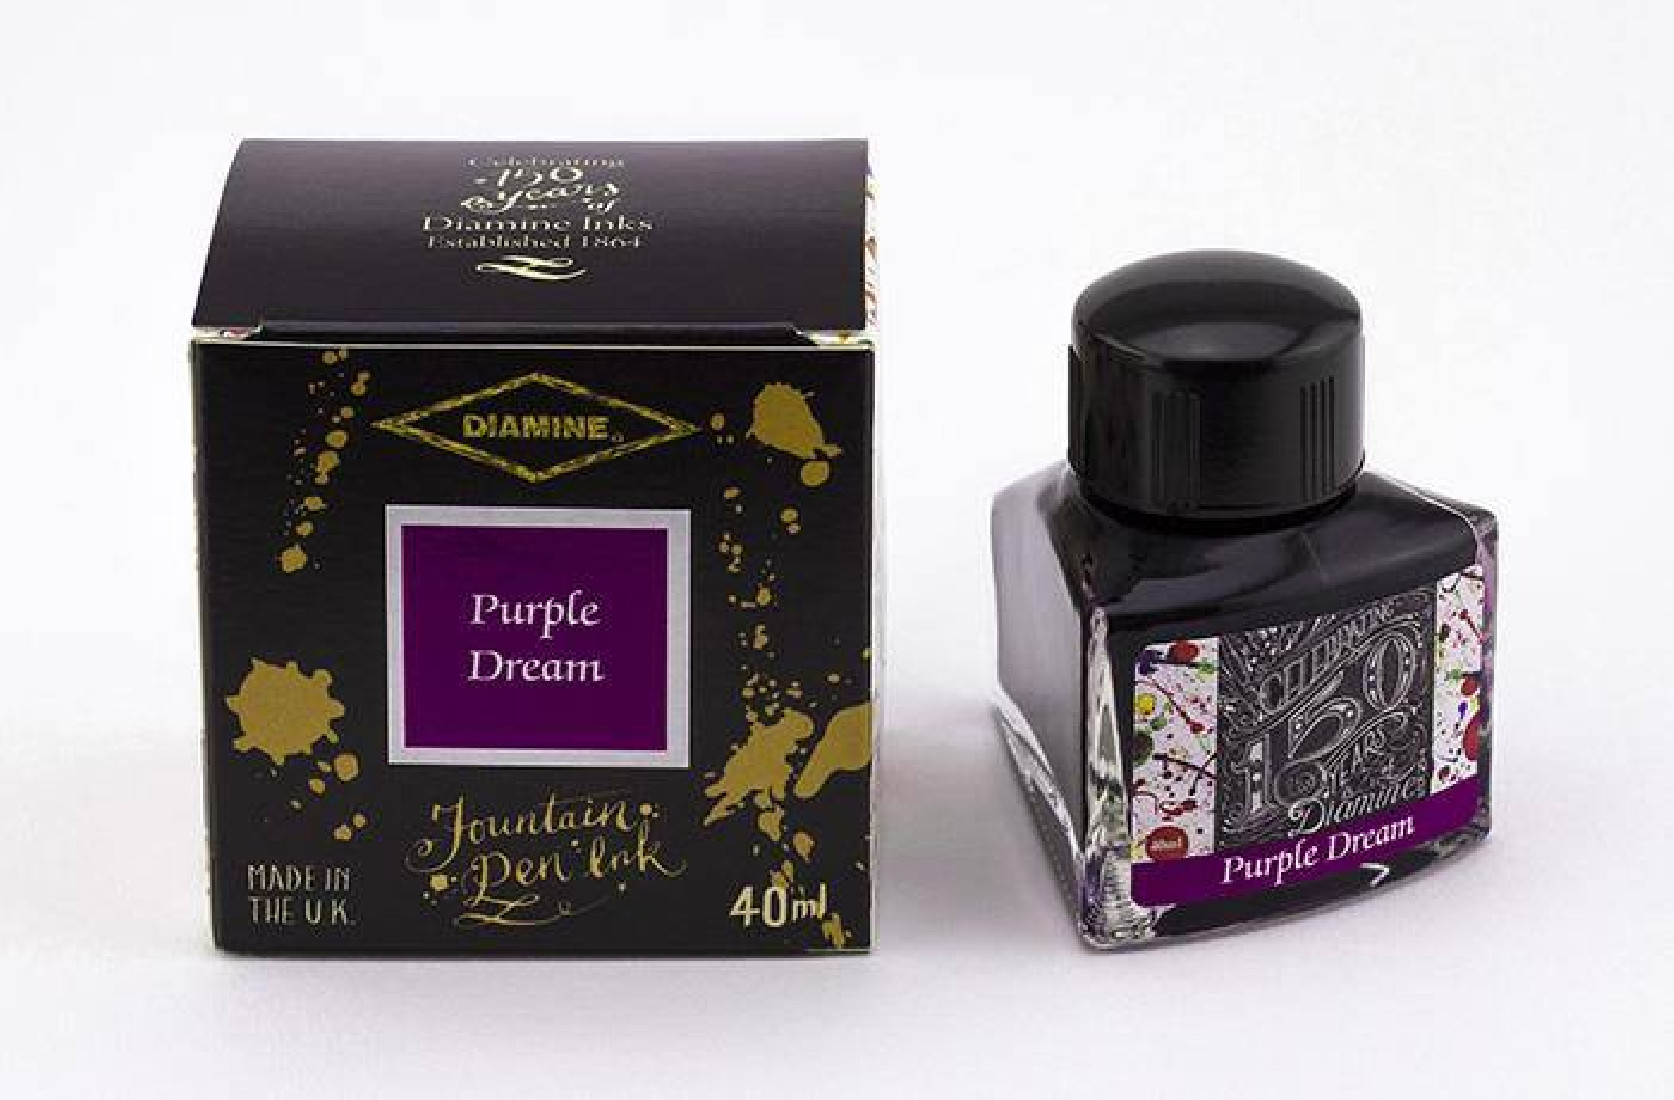 Diamine 40ml Purple Dream 1116 150 years anniversary Fountain pen ink